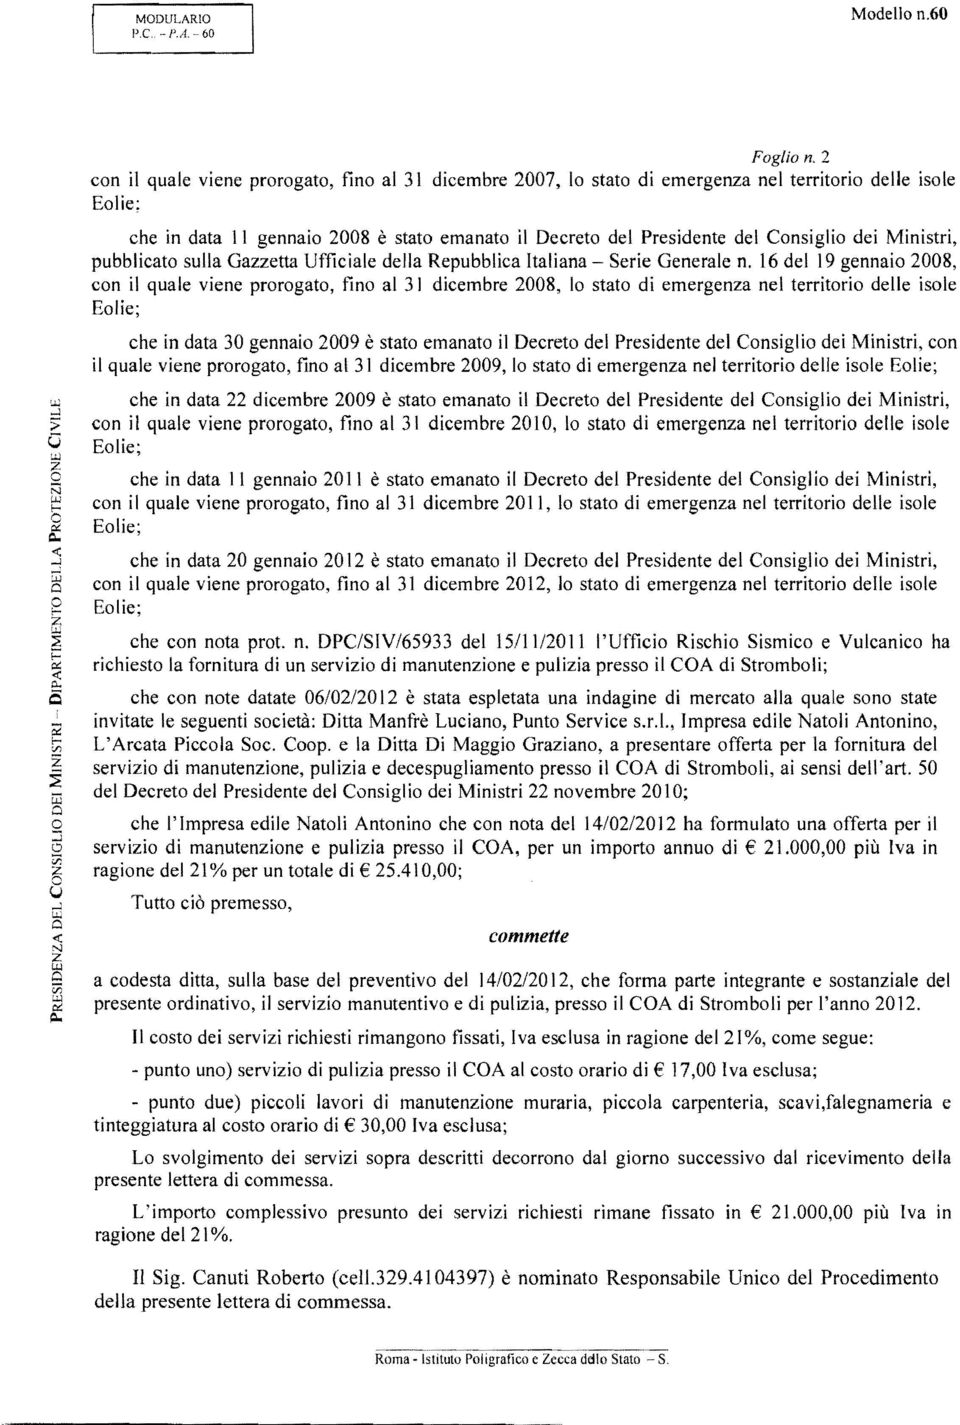 dei Ministri, pubblicato sulla Gazzetta Ufficiale della Repubblica Italiana - Serie Generale n.